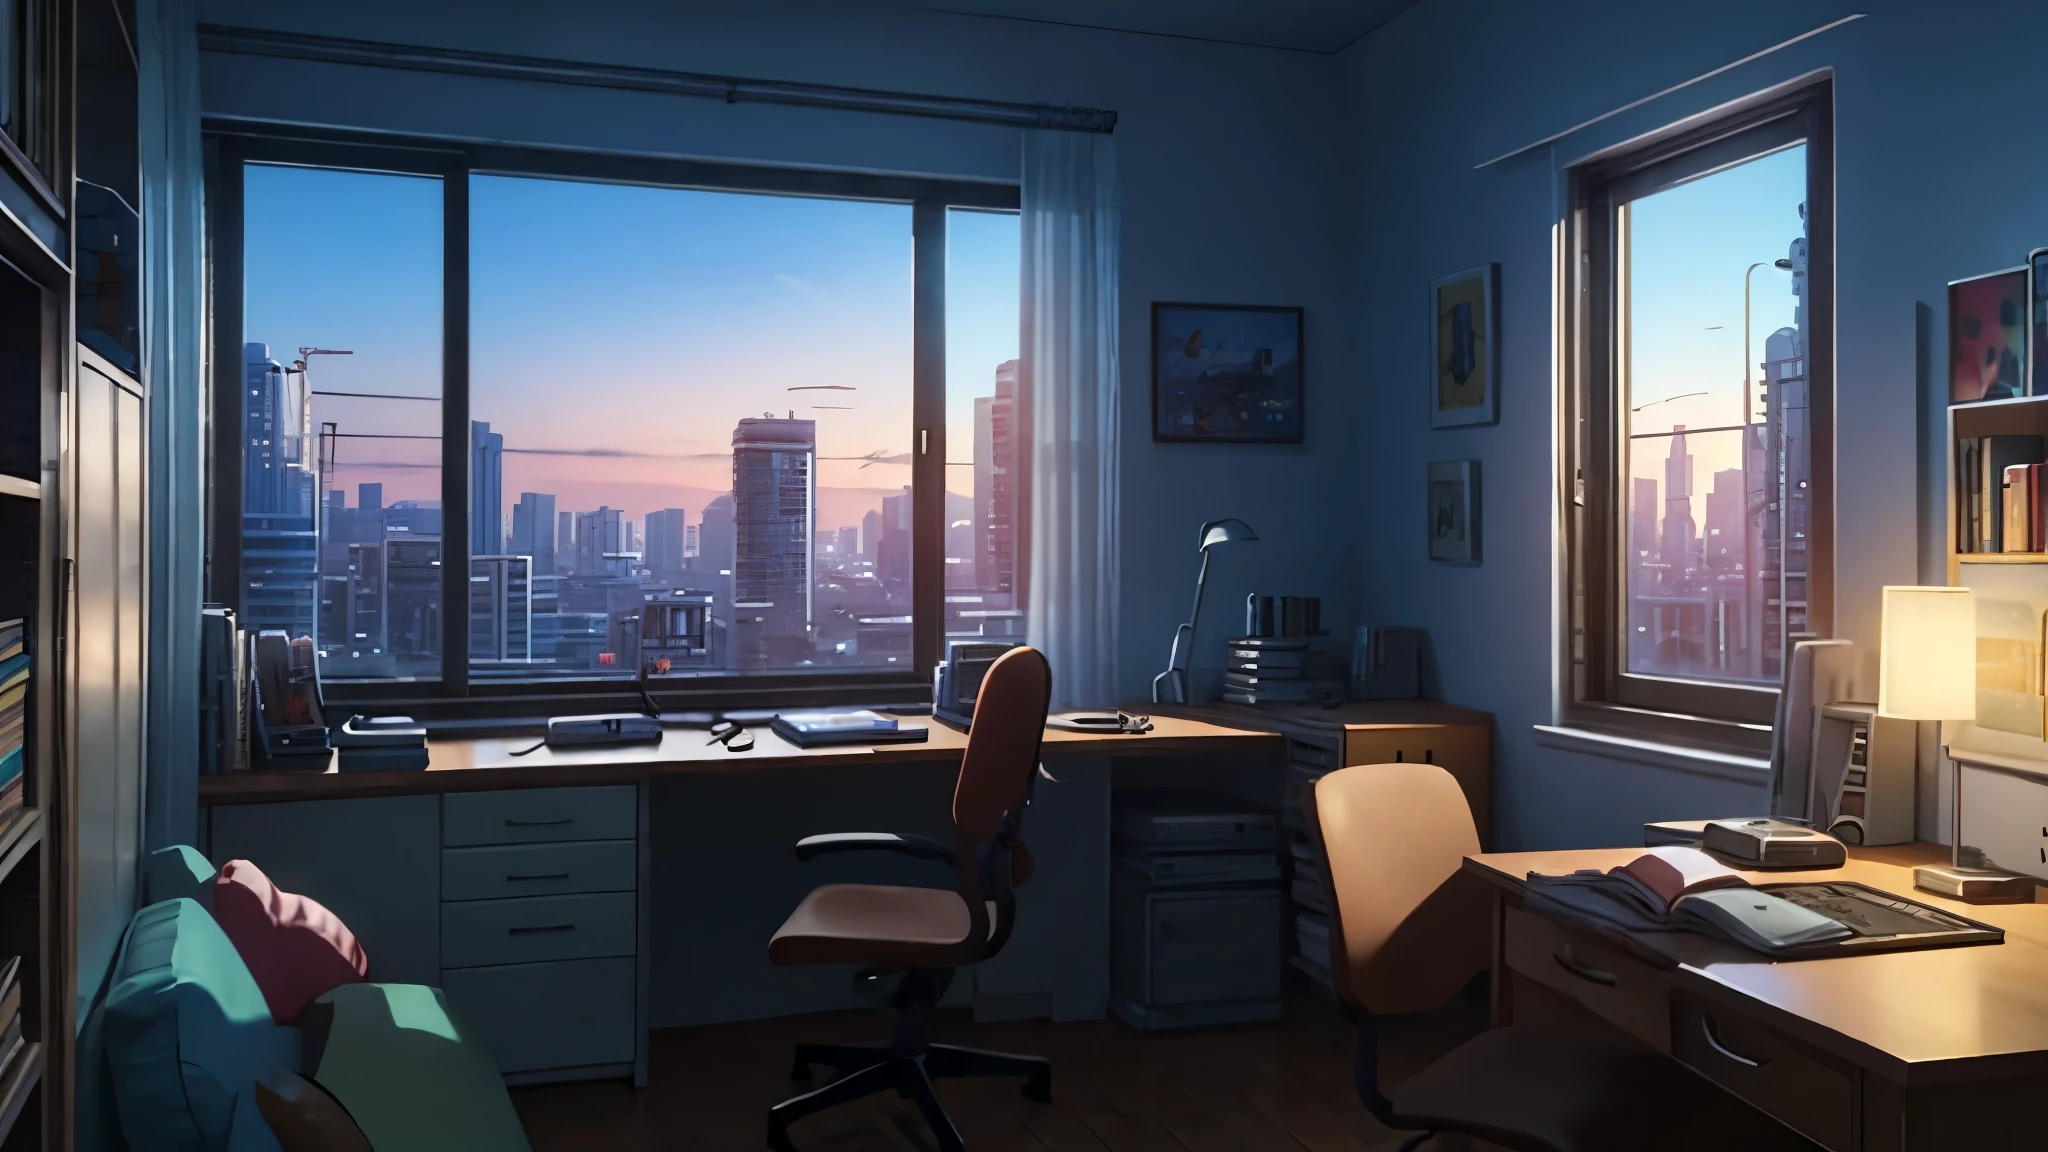 3D-Animation, filmisches Standbild eines gemütlichen Zimmers, große Fenster mit Blick auf die Stadt bei Nacht, Mond mit Haube, melancholisch, traurige Stimmung, Das Bett ist ungemacht, computer desk, vollgestopft mit unpassenden Möbeln, Die Poster im Otaku-Stil an den Wänden und die Gitarre in der Ecke,im Stil von Pixar, Disney, Dampfwelle, Mädchen mit Kopfhörern am Schreibtisch
